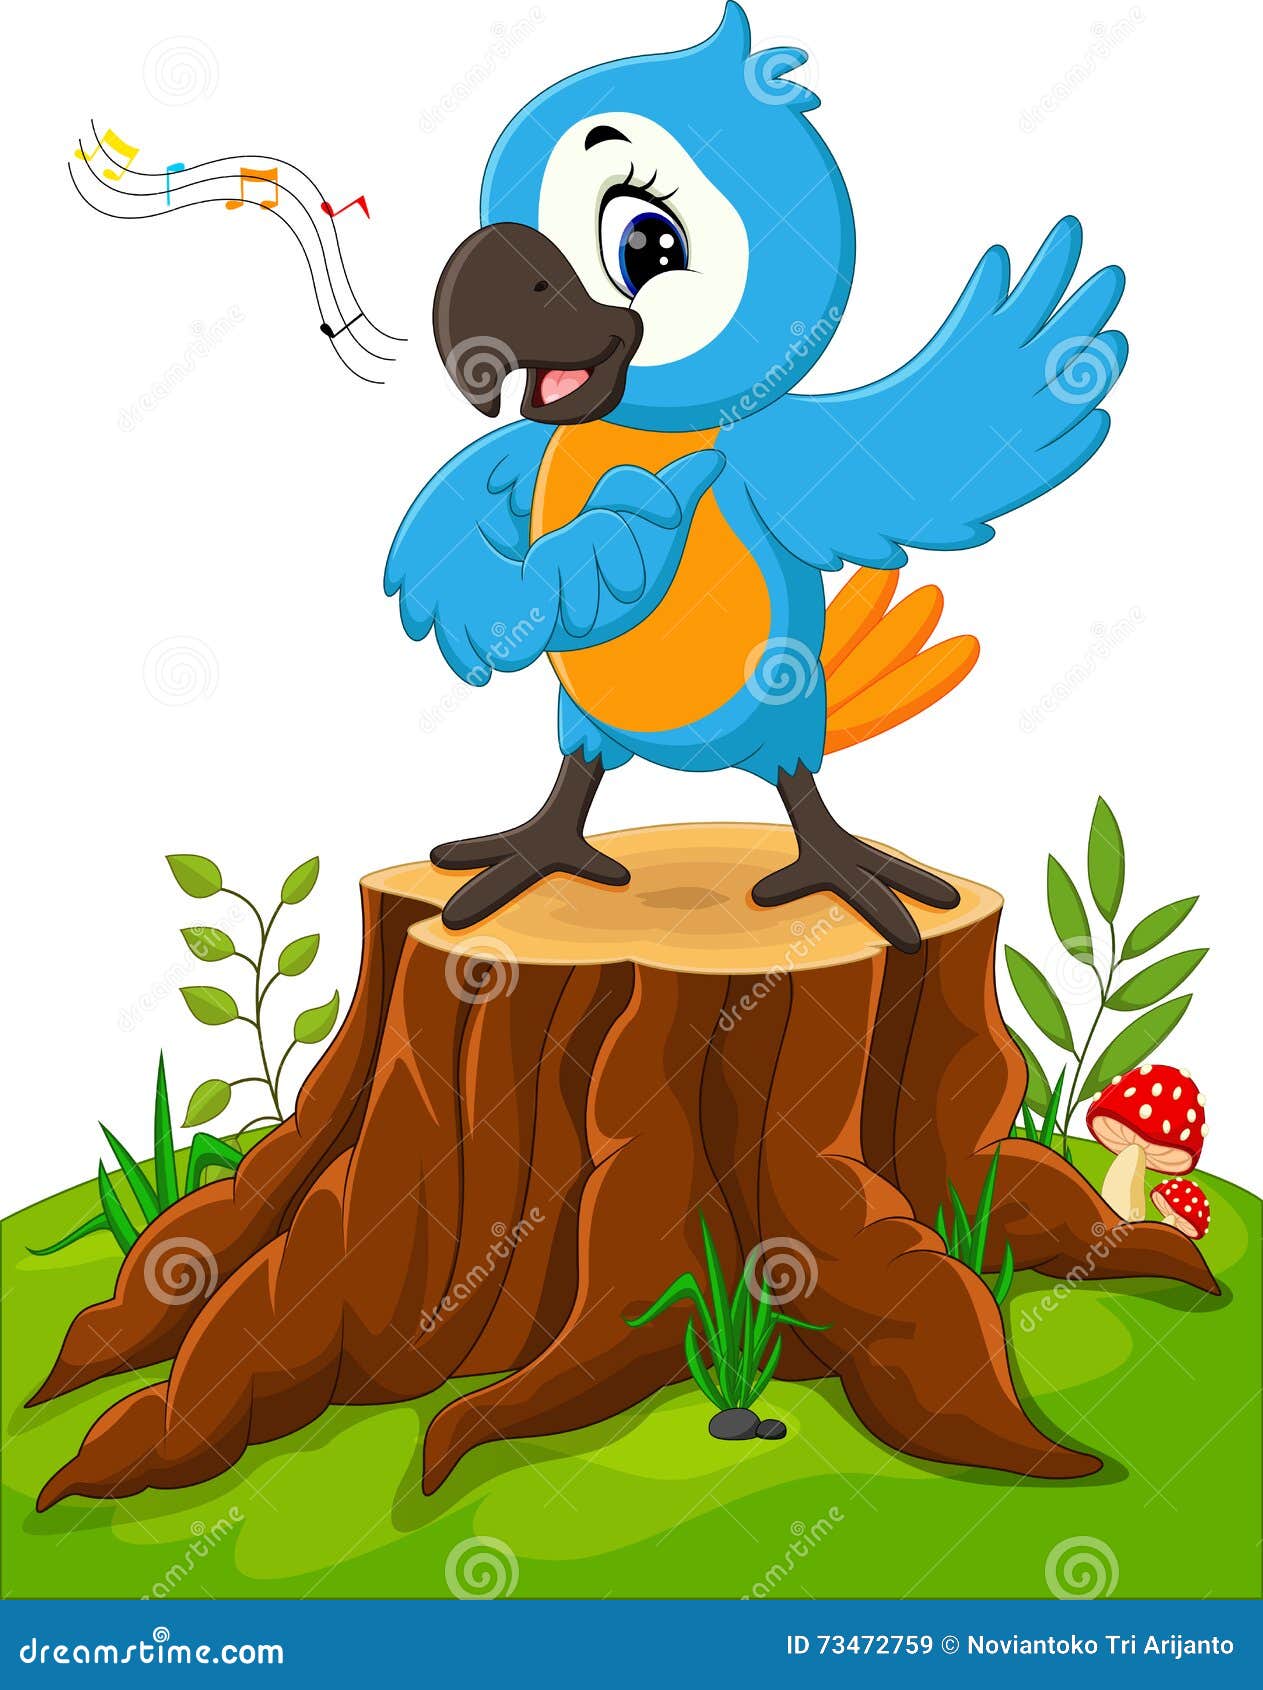 Cartoon parrot singing stock vector. Illustration of friendly - 73472759